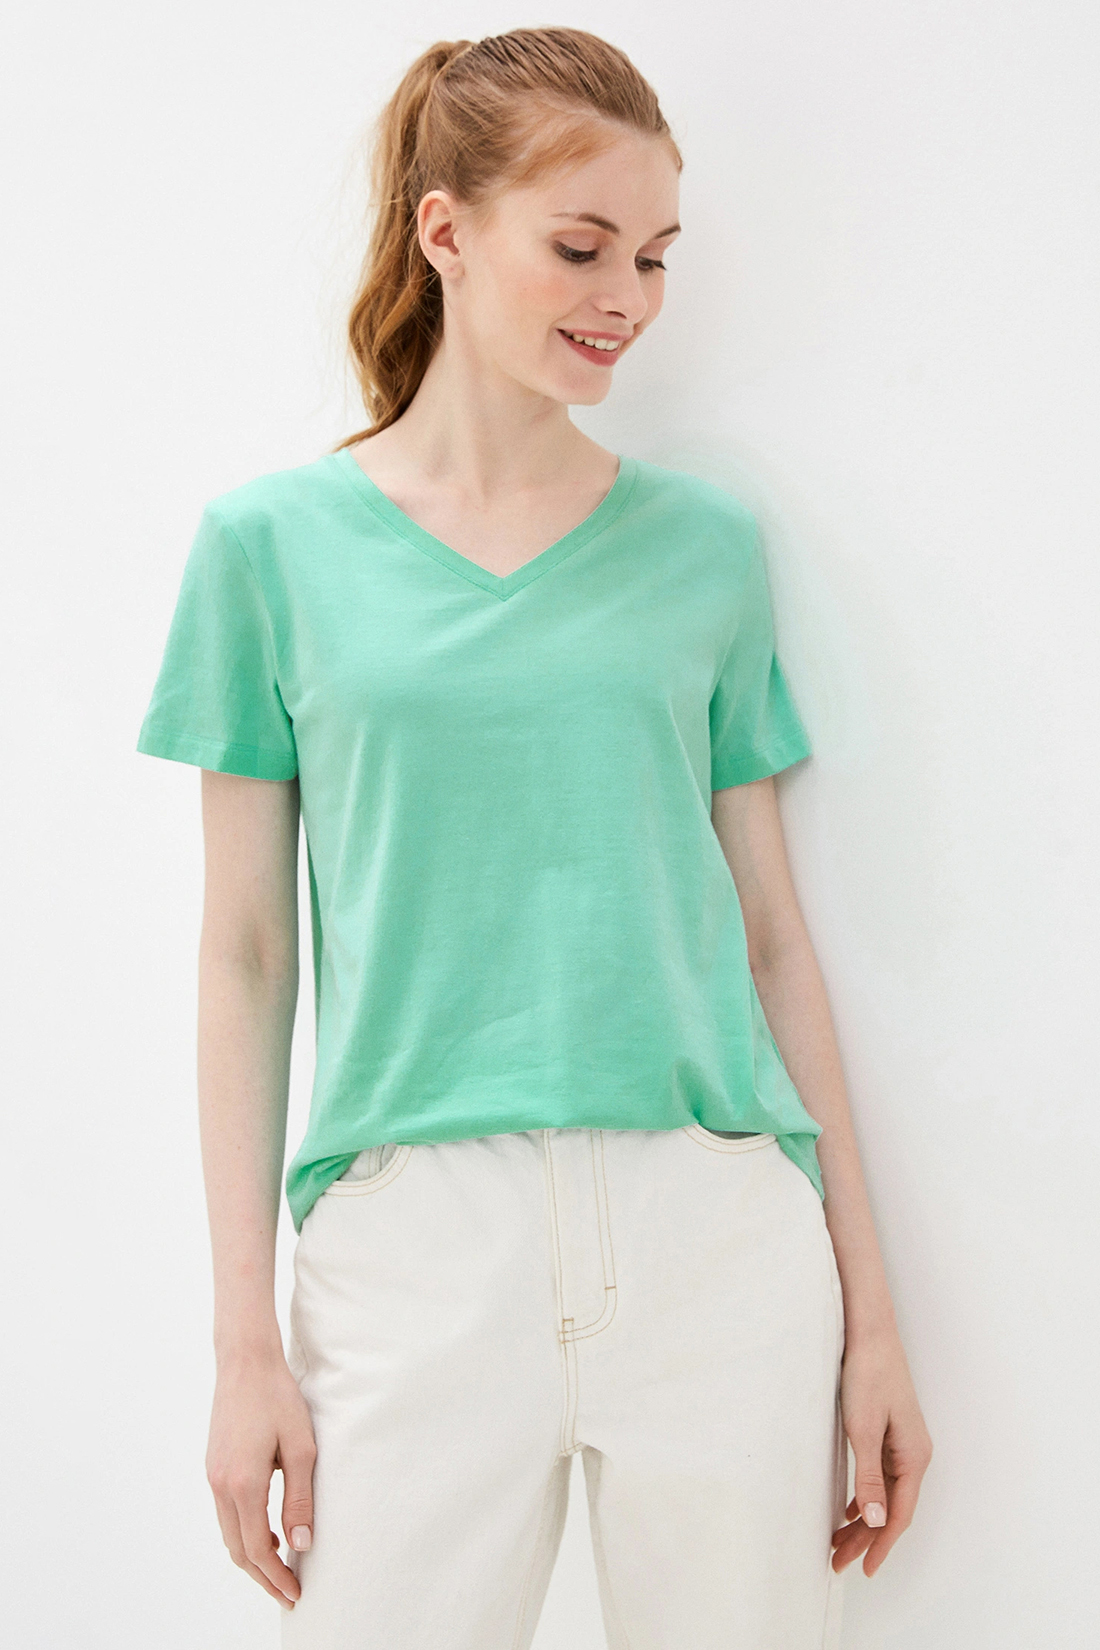 Базовая футболка (арт. baon B230202), размер XL, цвет зеленый Базовая футболка (арт. baon B230202) - фото 1